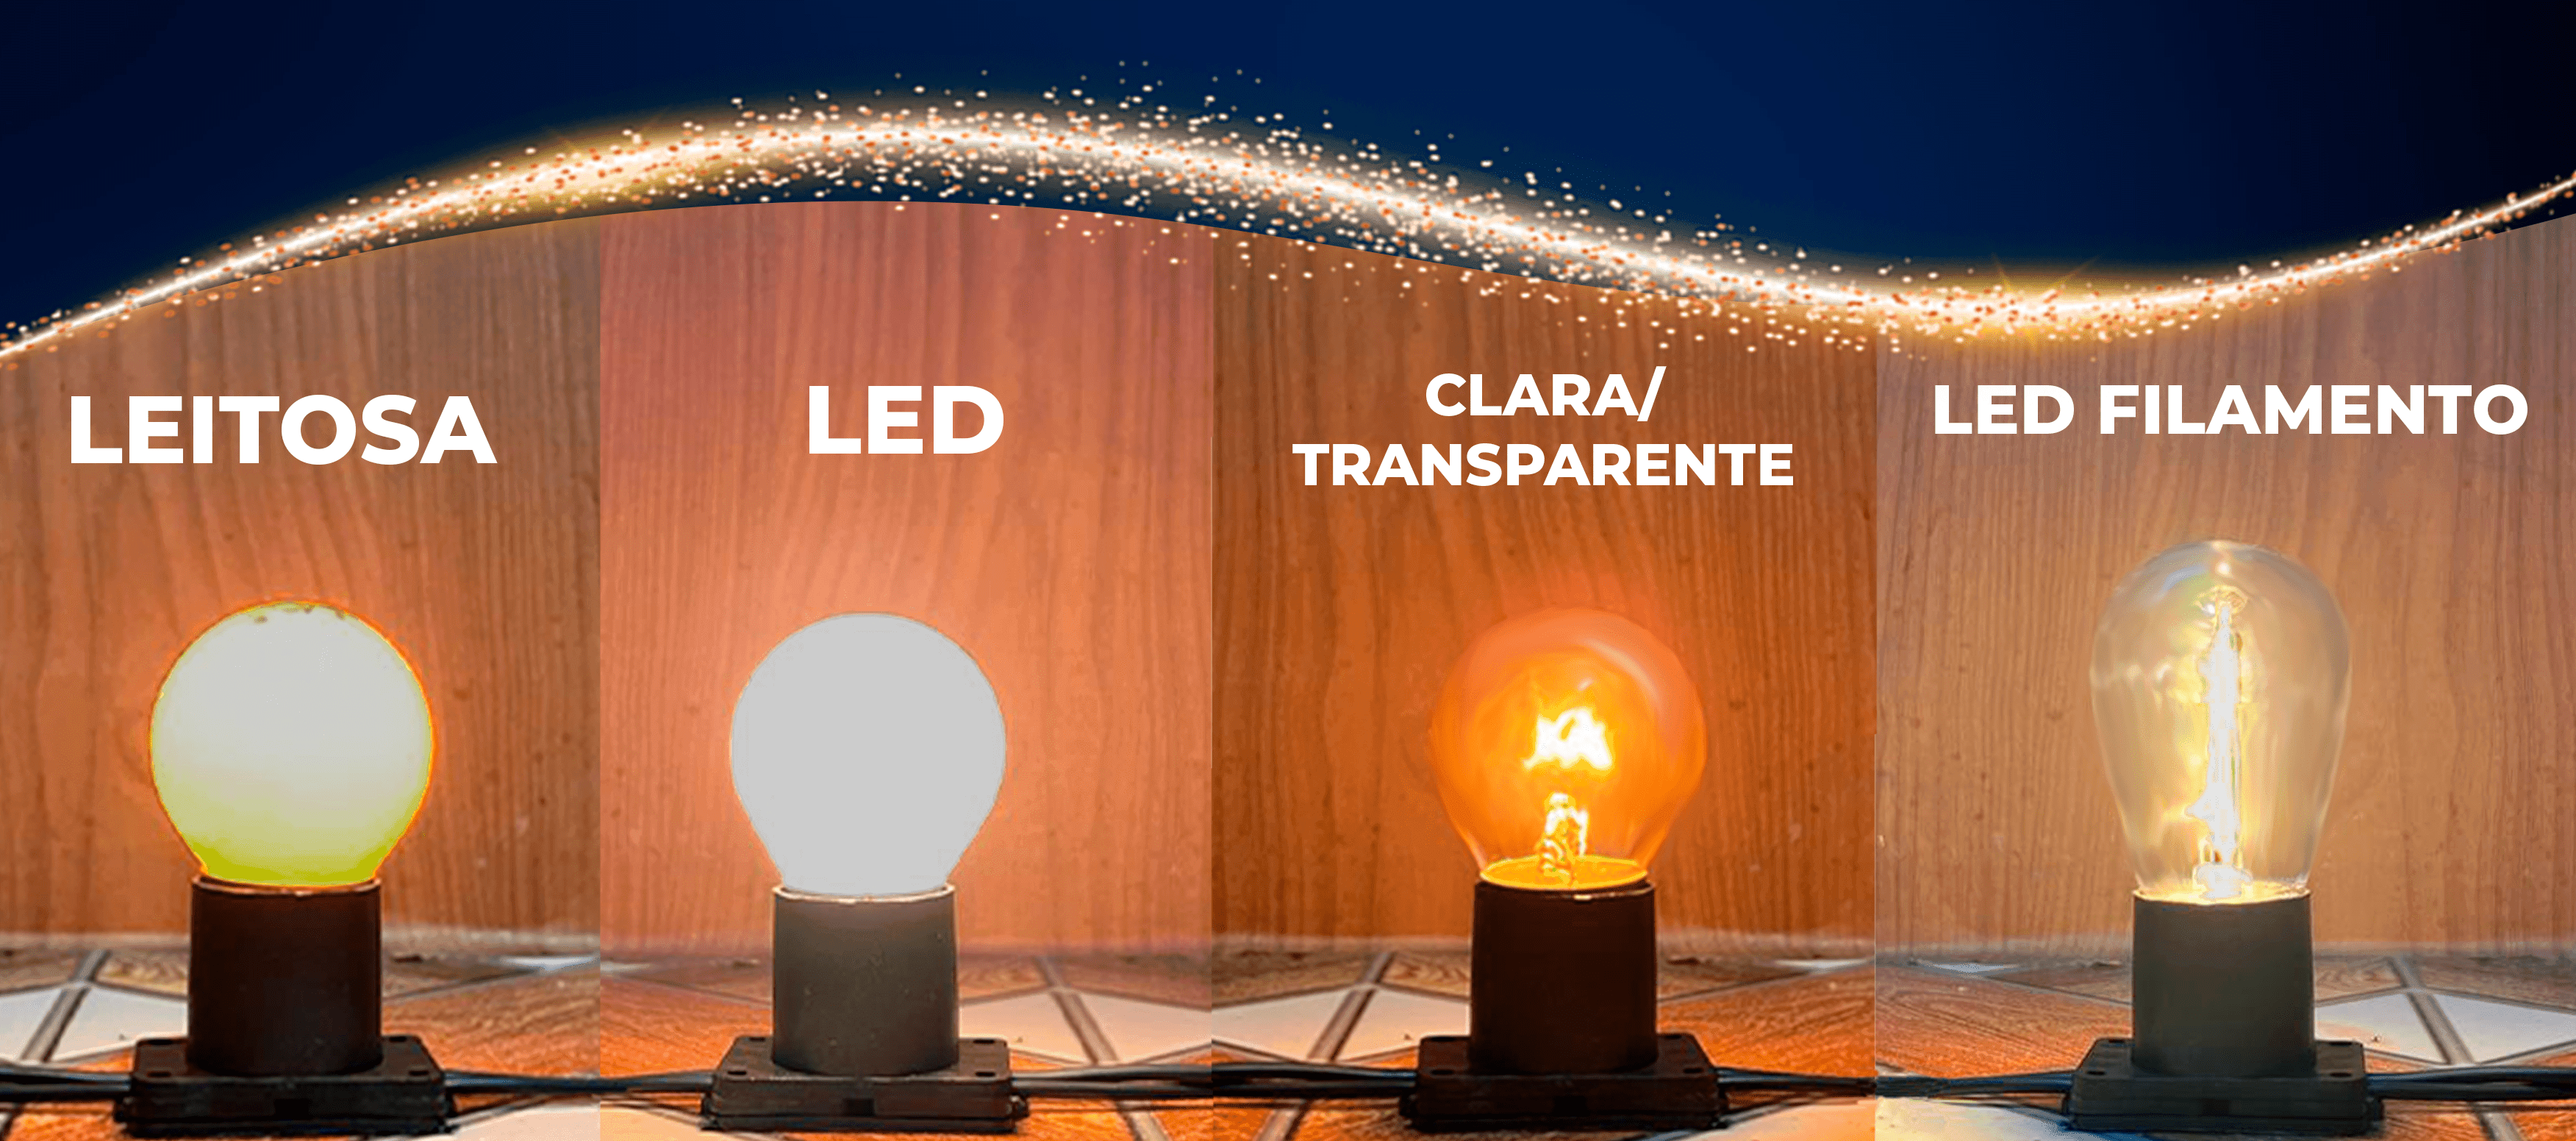 Quatro modelos de lâmpadas Led, Leitosa, clara/transparente e filamento